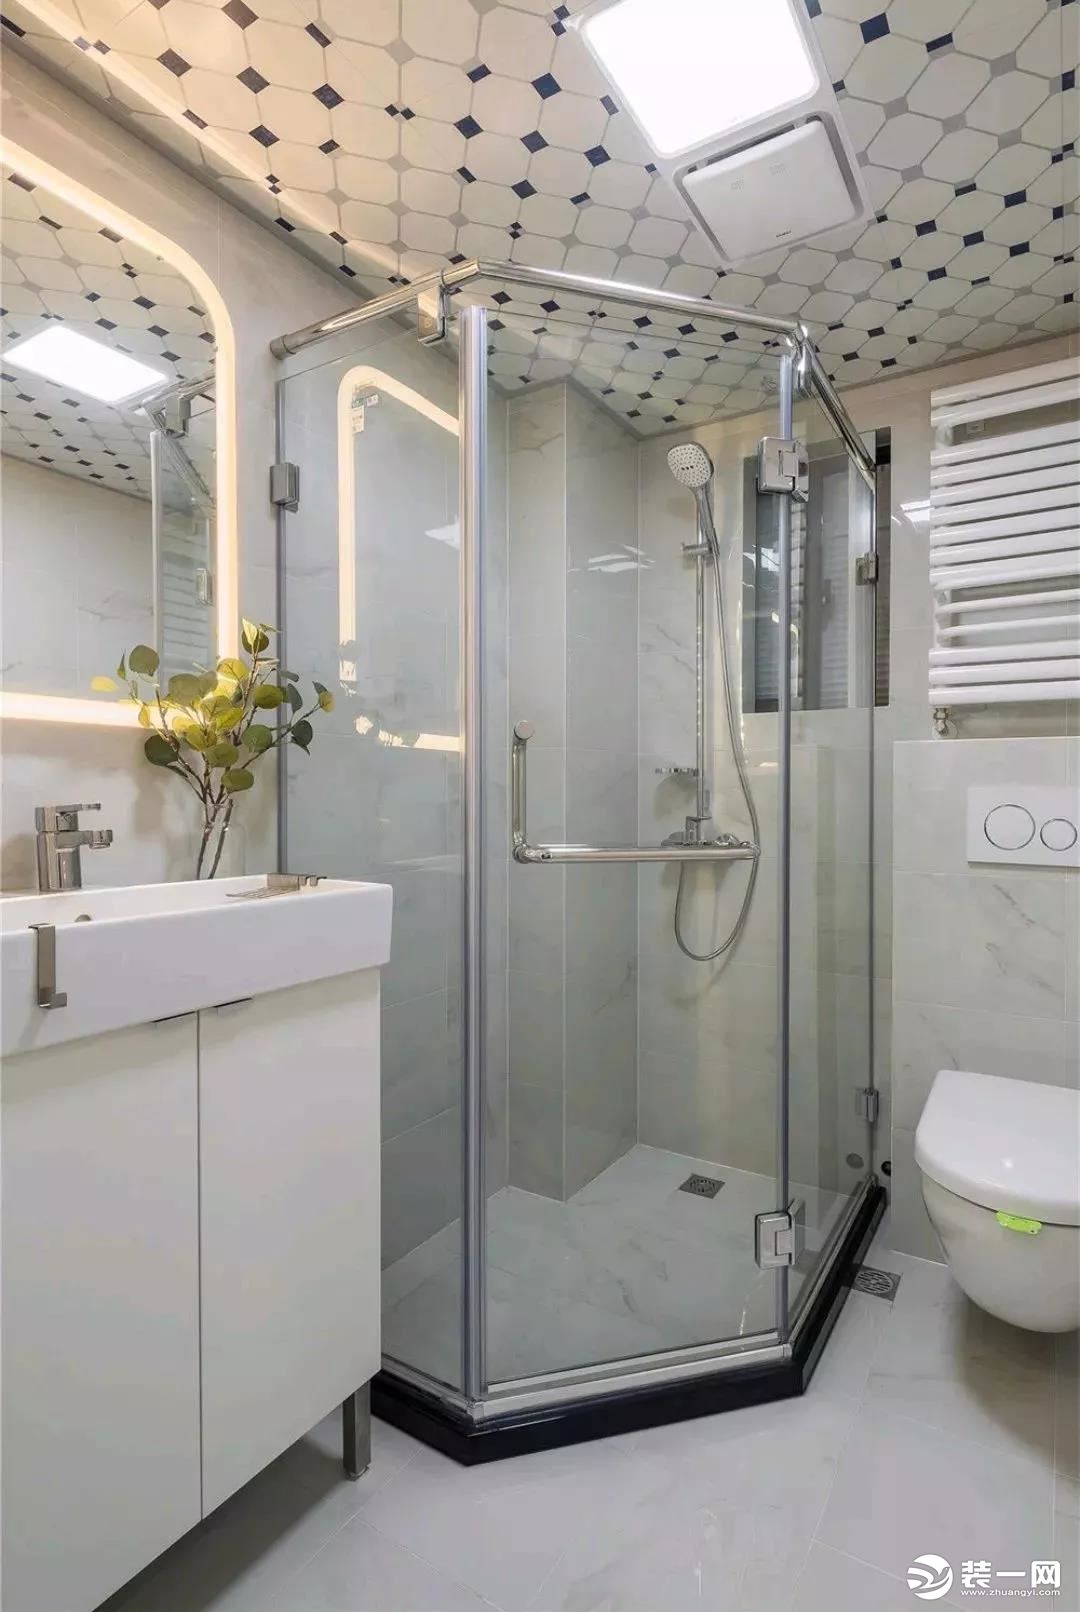 钻石形的淋浴房，让这个小小的卫生间也可以做干湿分离，顶面有图案的铝扣板，似乎做出来的效果也不会太差，